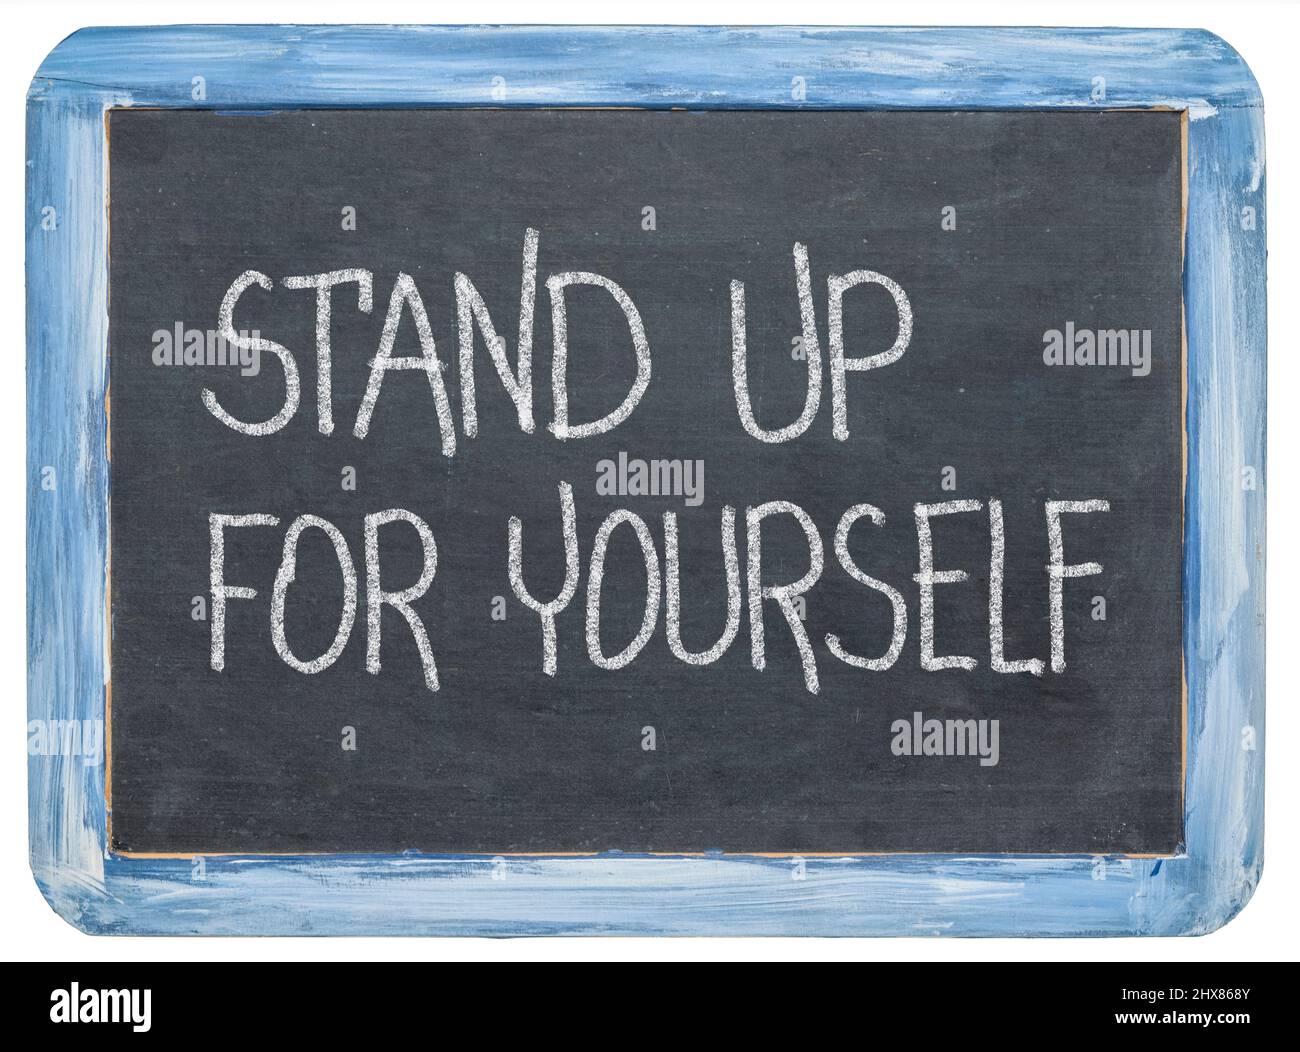 Stehen Sie für sich selbst auf - inspirierende Botschaft, weiße Kreide-Handschrift auf einer isolierten Retro-Schiefertafel Stockfoto